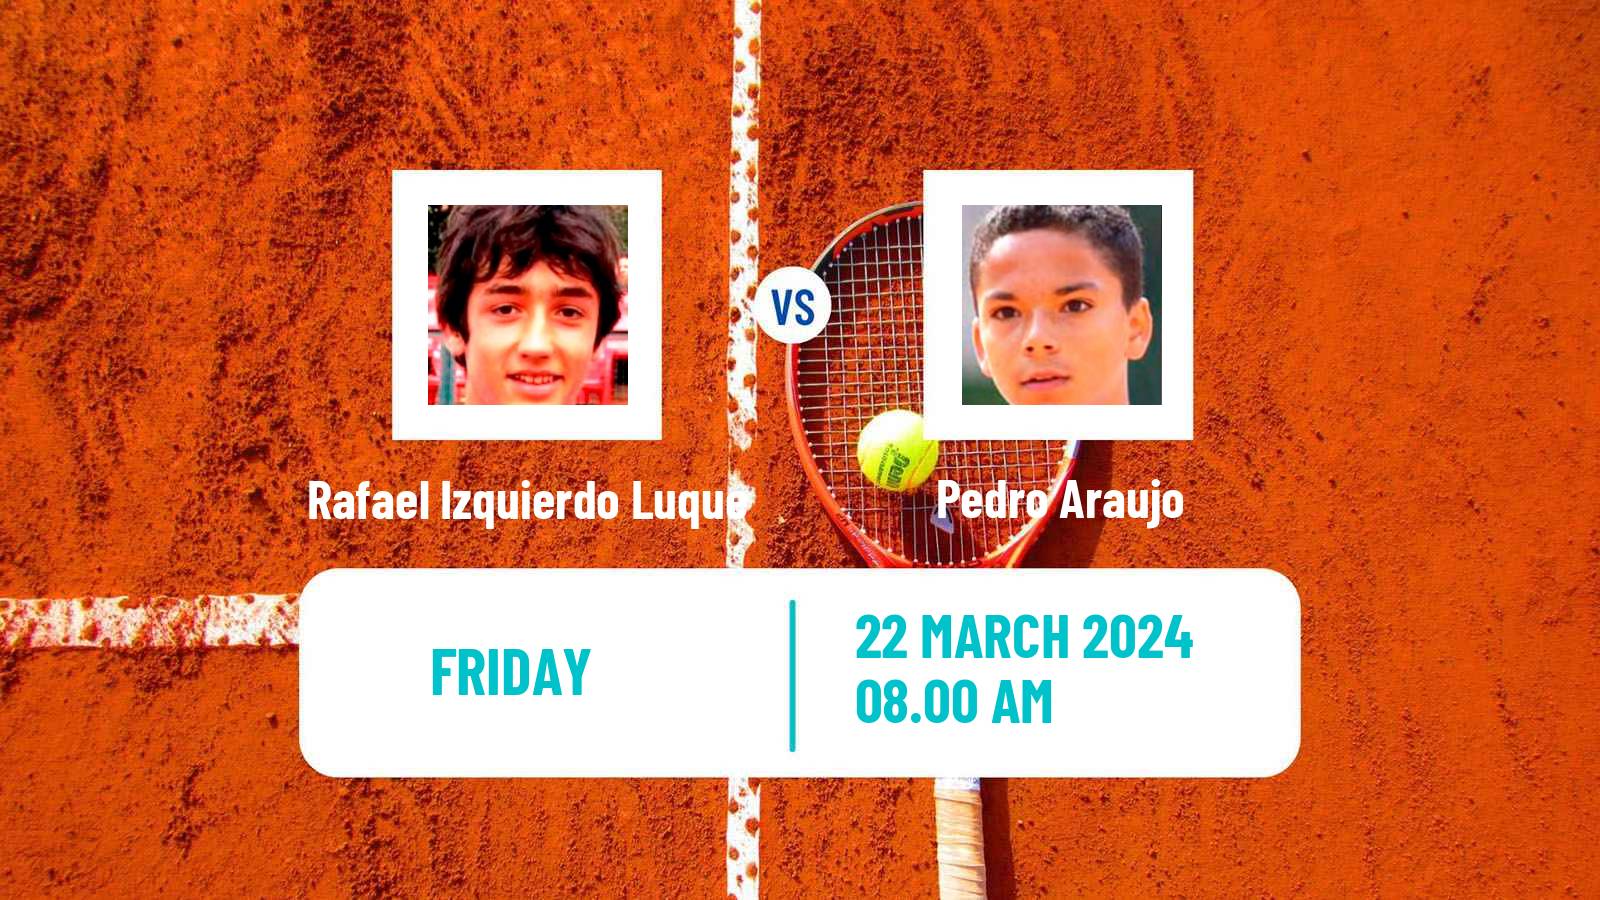 Tennis ITF M25 Loule Men Rafael Izquierdo Luque - Pedro Araujo